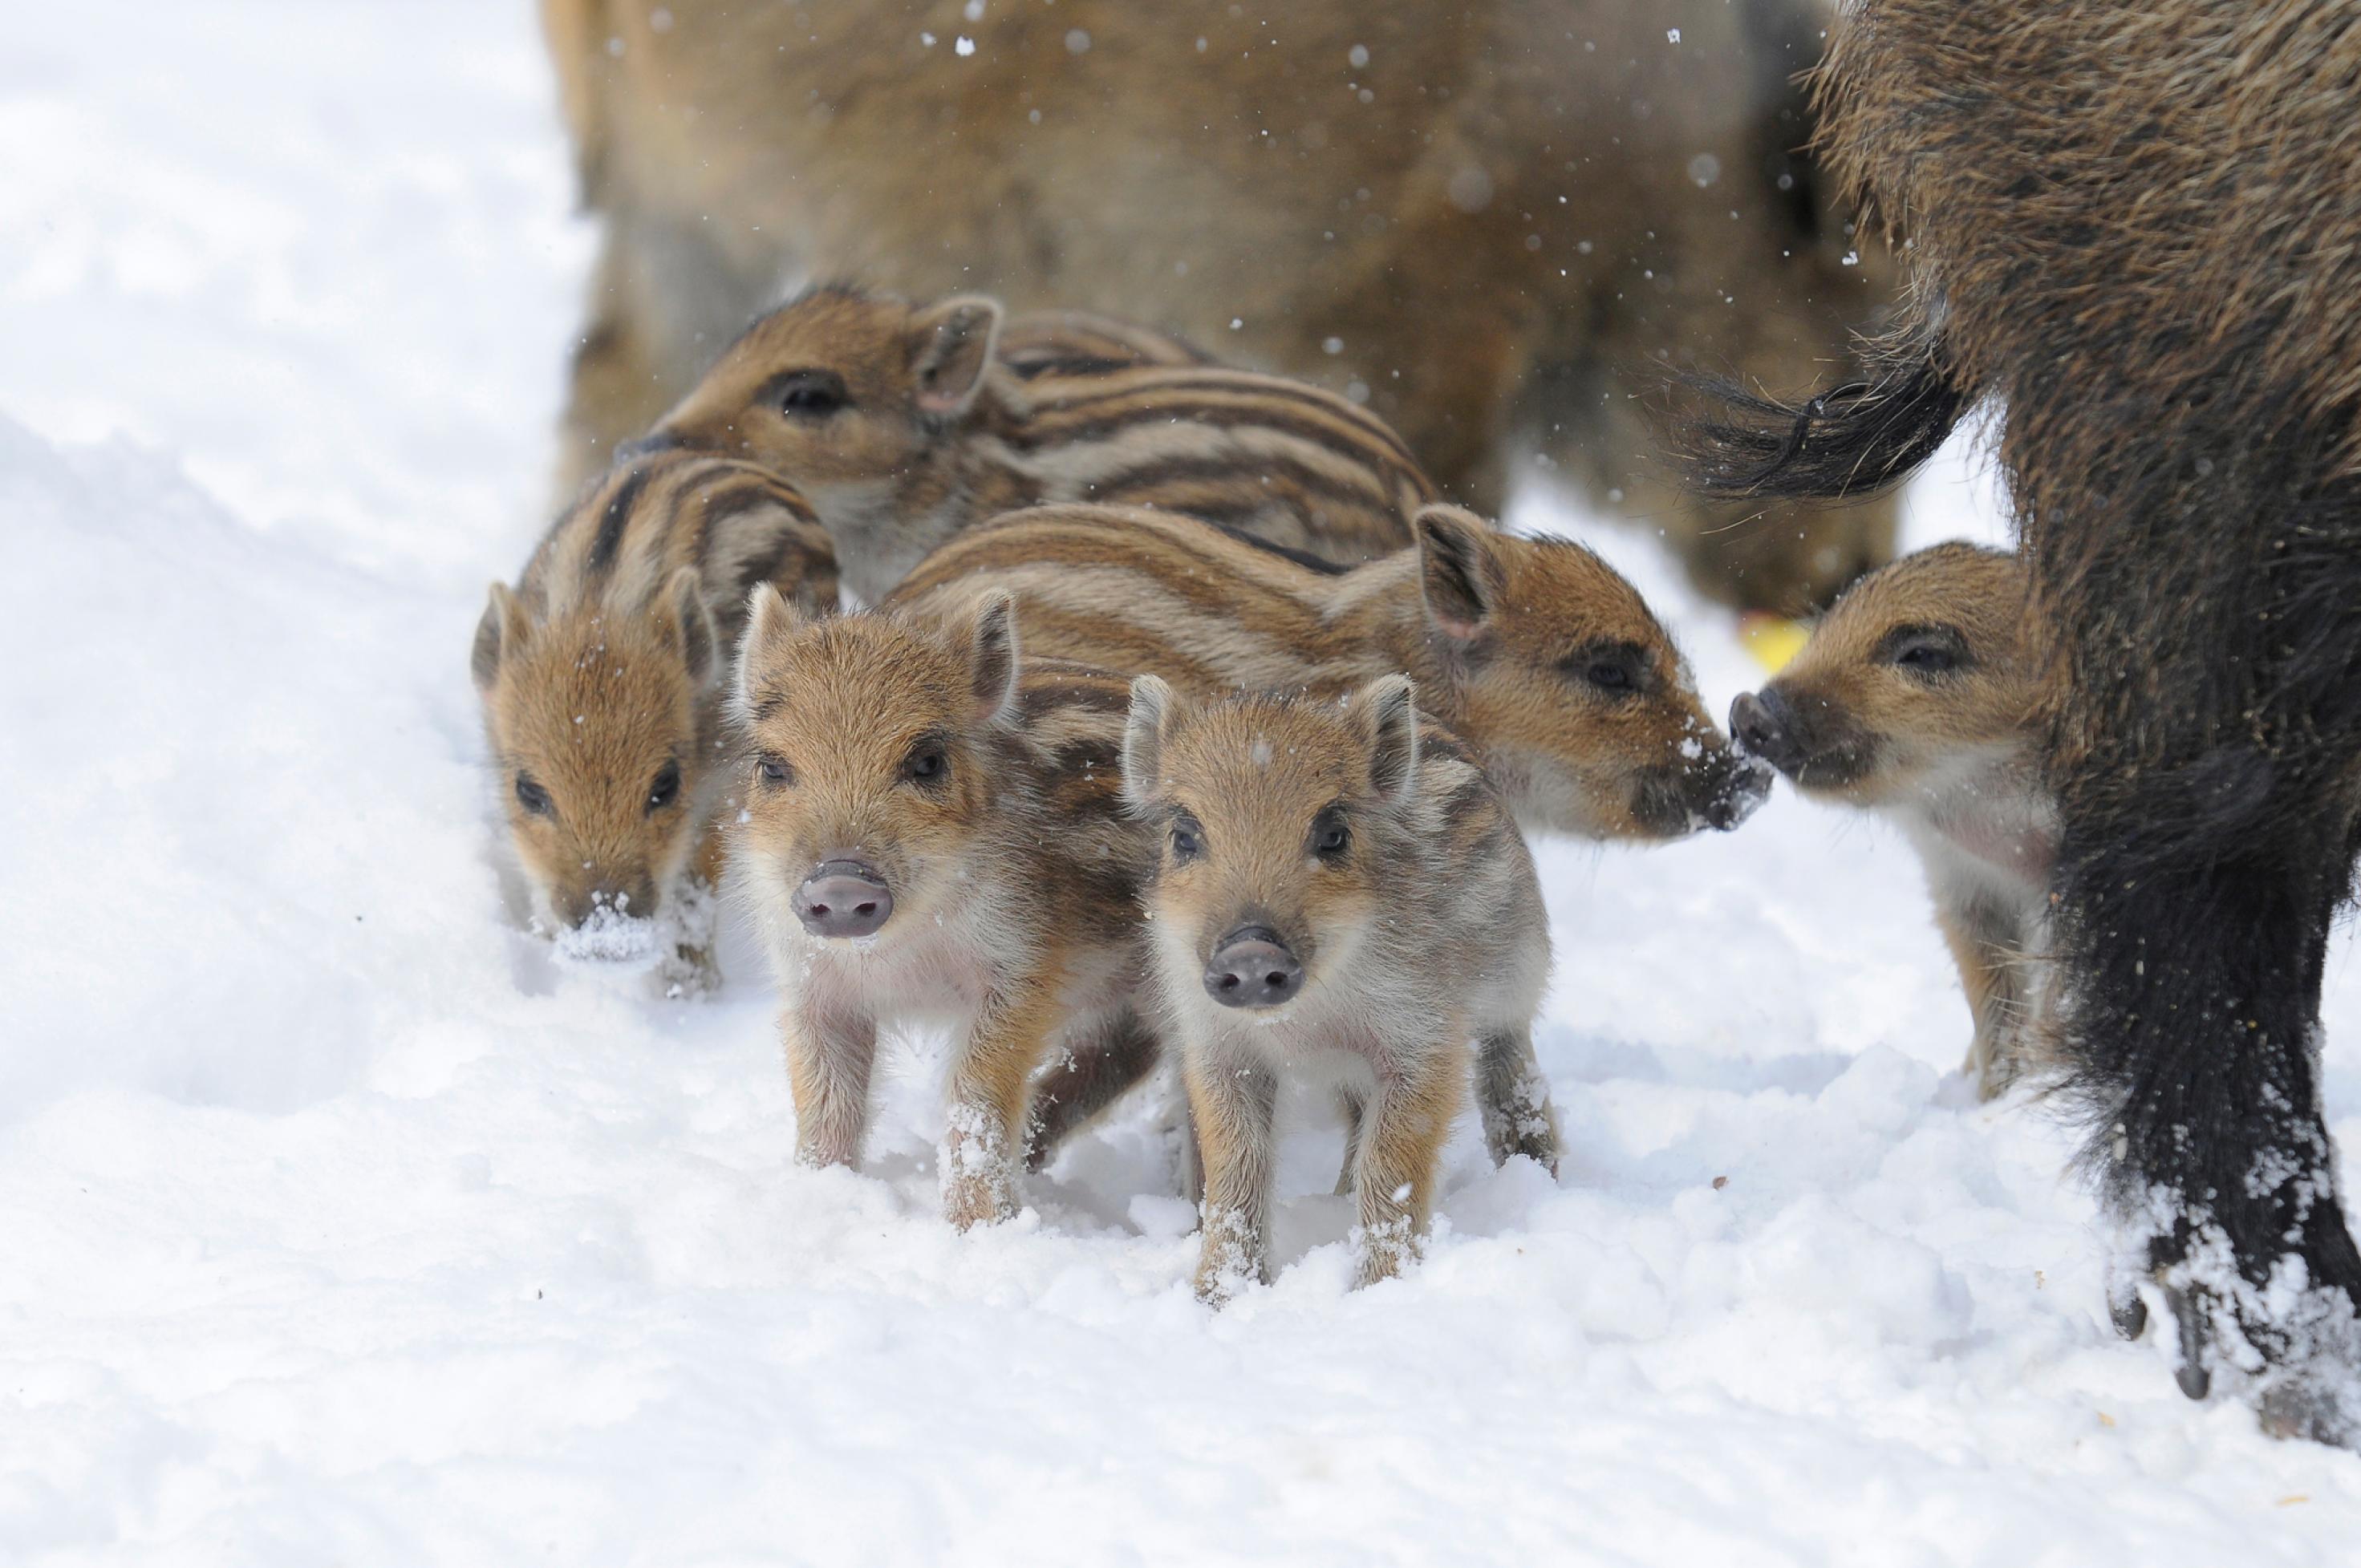 In dichtem Schnee sind sechs hellbraune, am Rücken braunweiß gestreifte Wildschwein-Kinder zu sehen. Zwei blicken neugierig in die Kamera, eines hat Schnee an der Schnauze, zwei beschnüffeln sich. Rechts ist das dunkelbraune Bein der Mutter zu erkennen, im Hintergrund unscharf ein weiteres erwachsenes Wildschwein.